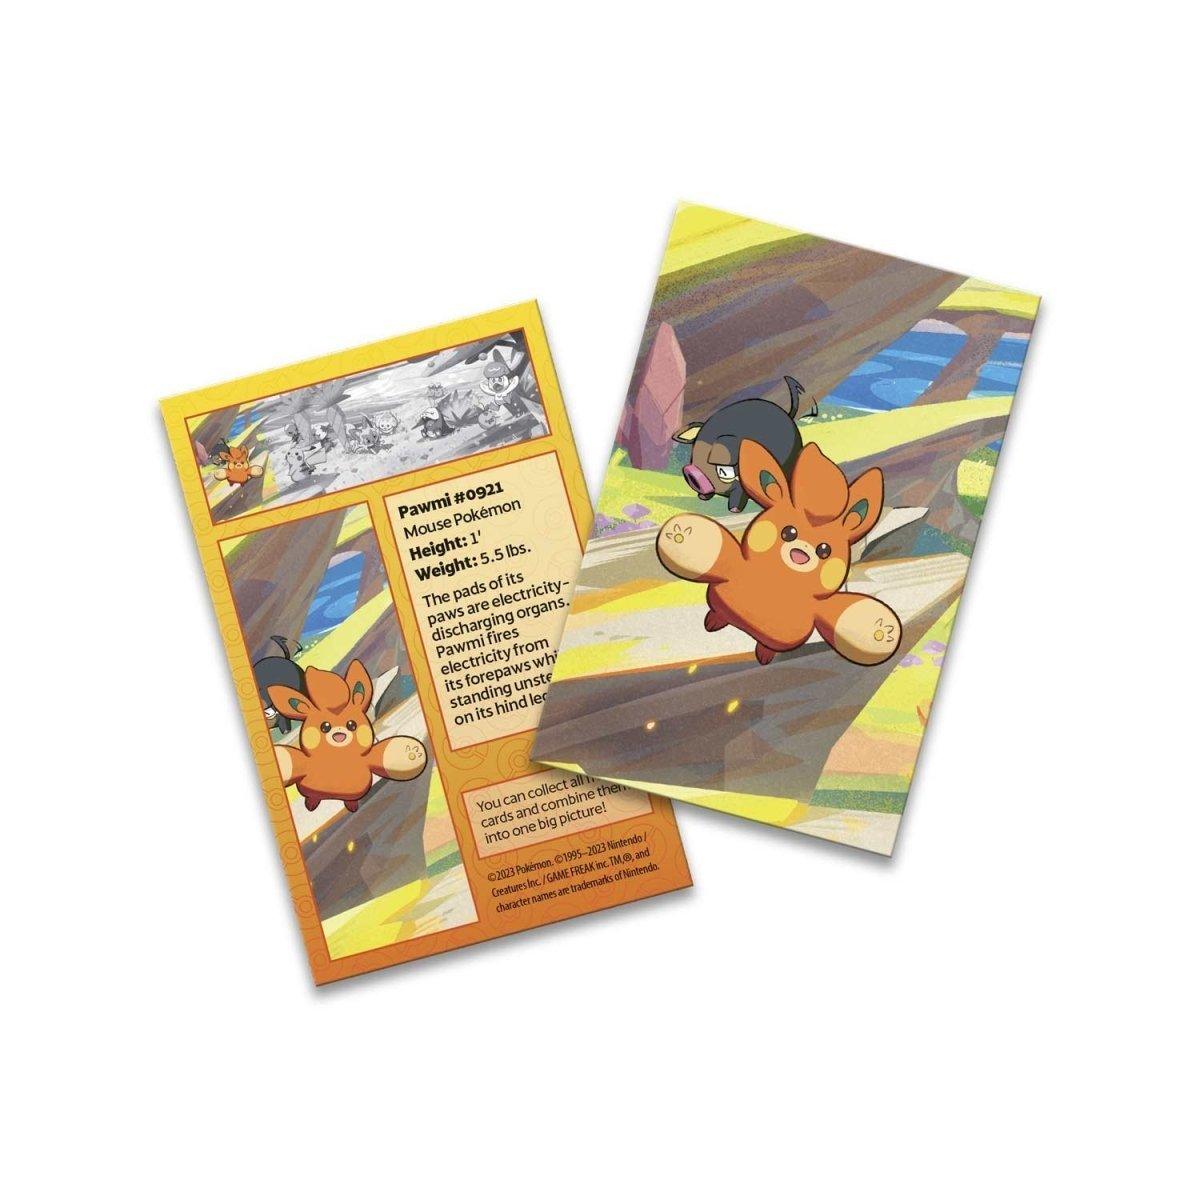 Pokémon TCG: Pokémon GO Mini Tin (Blissey & Meltan)